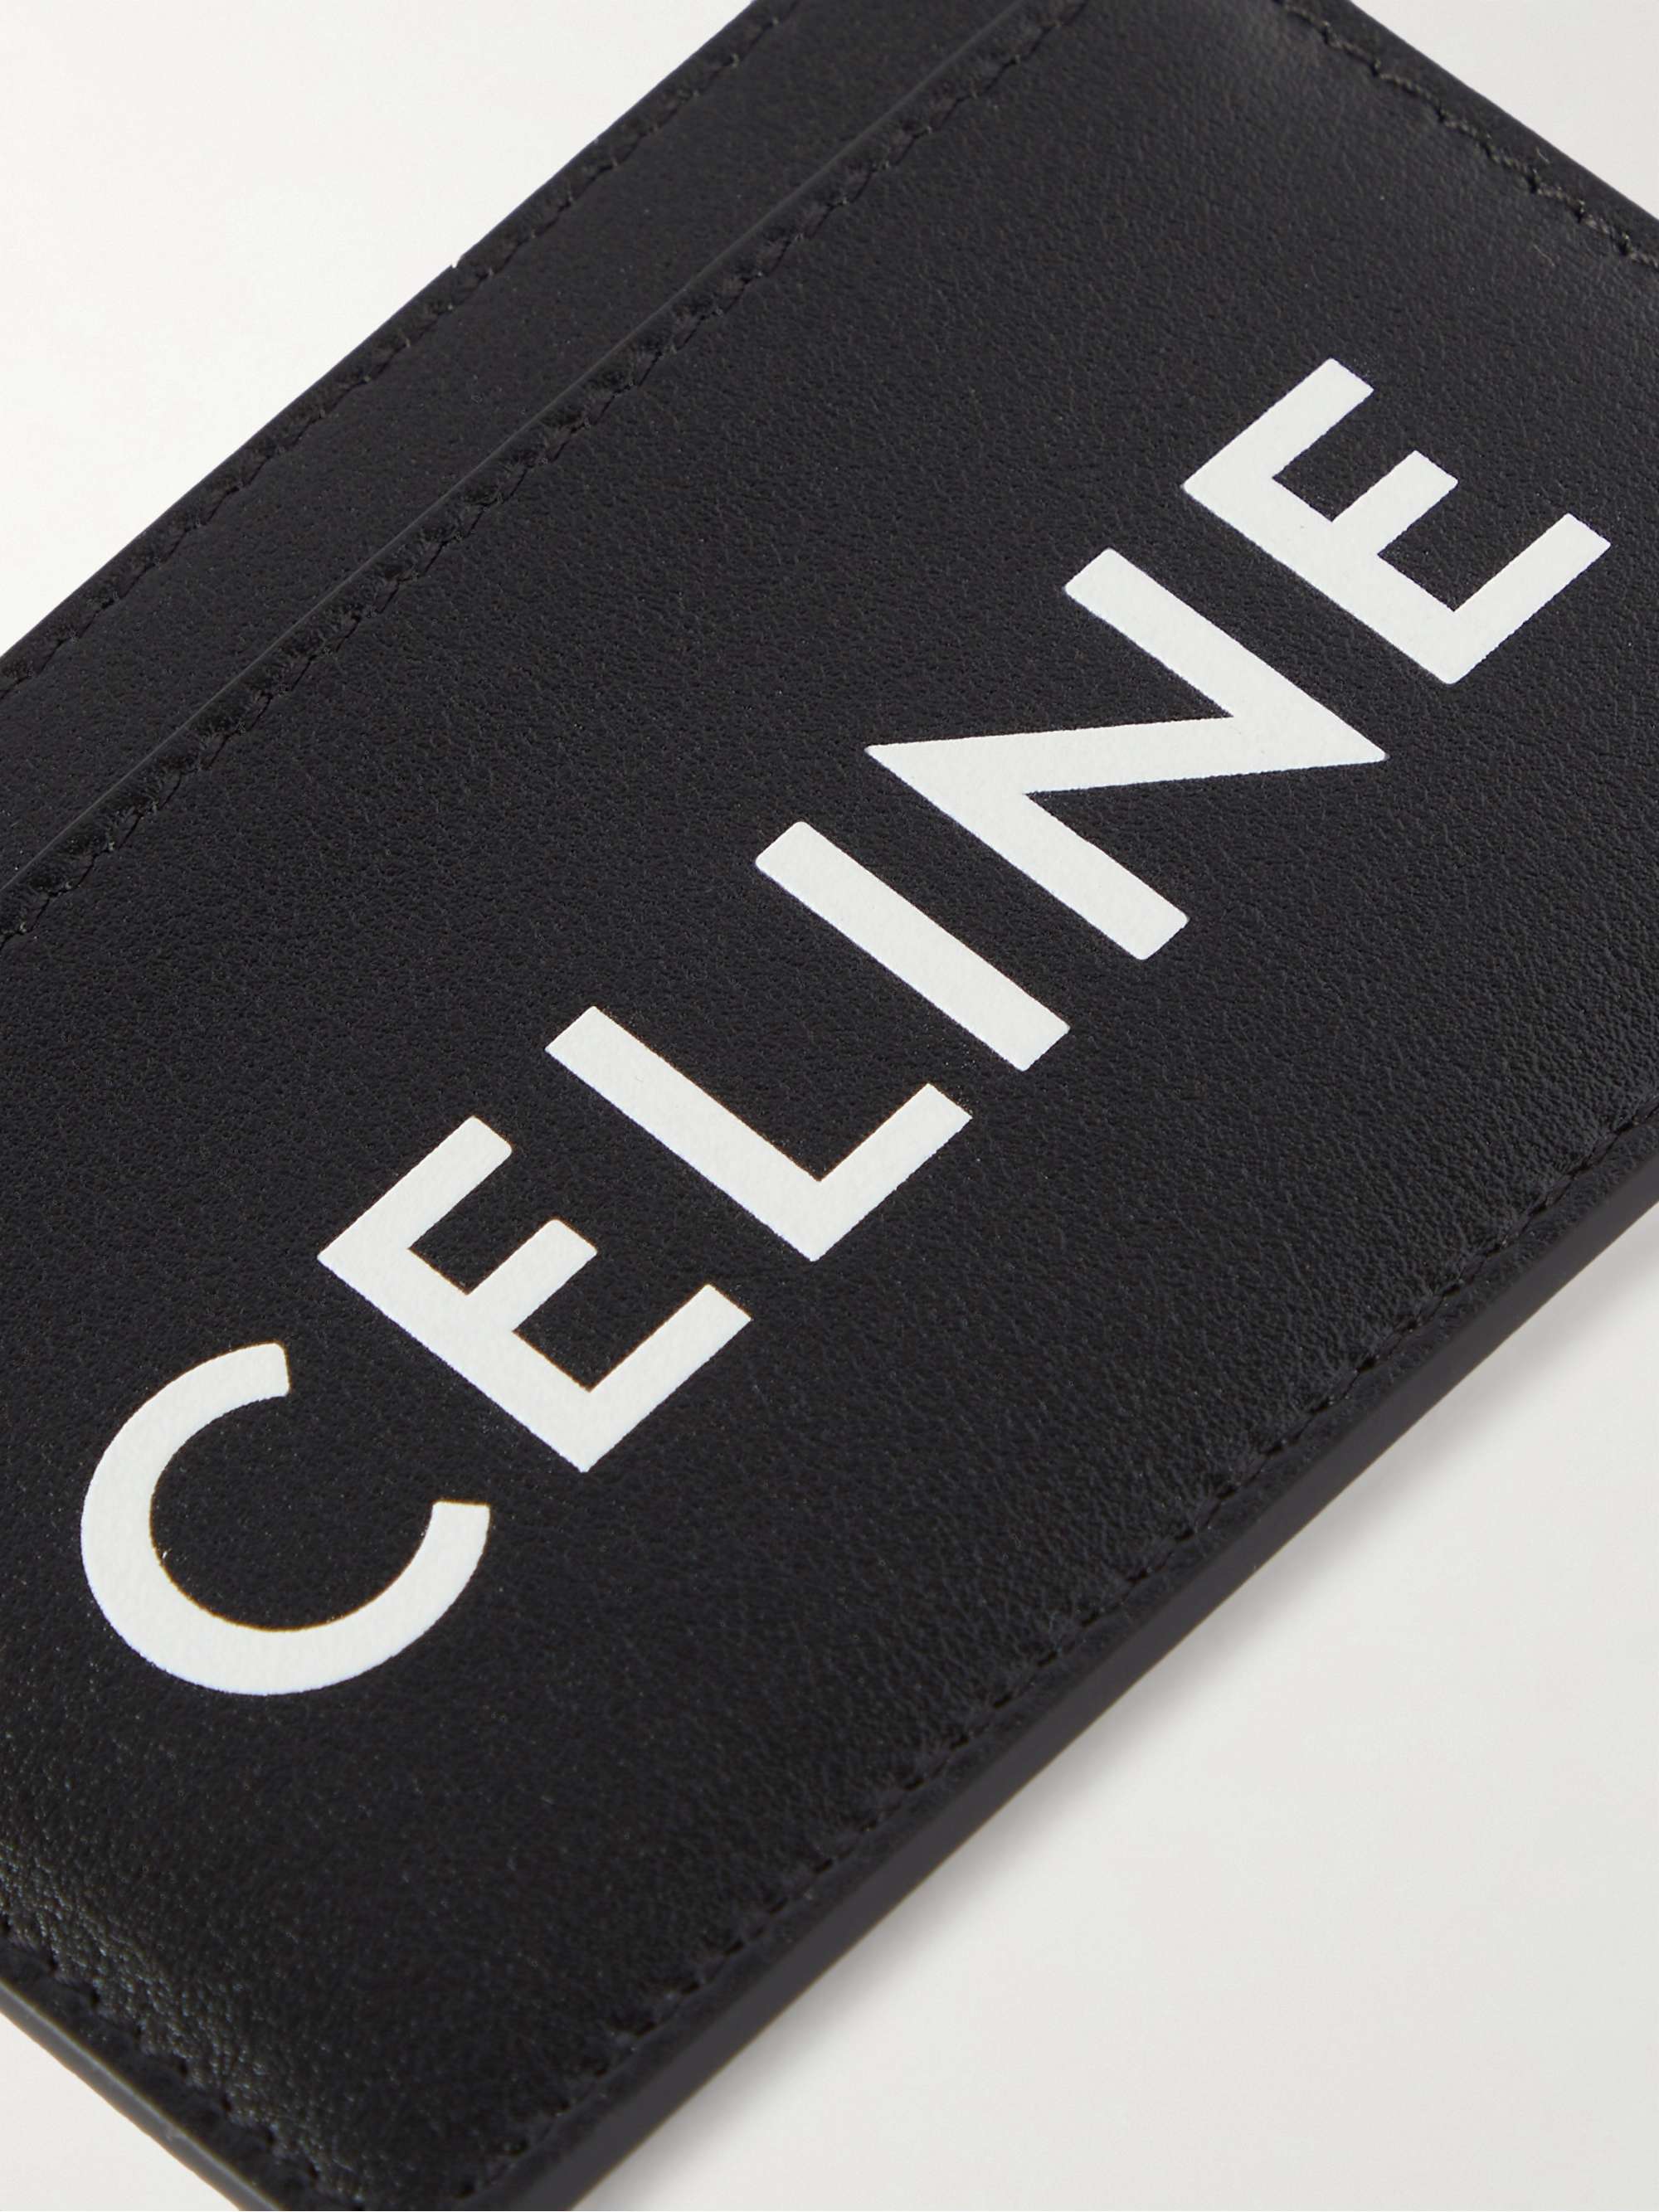 CELINE HOMME Cross-Grain Leather Cardholder